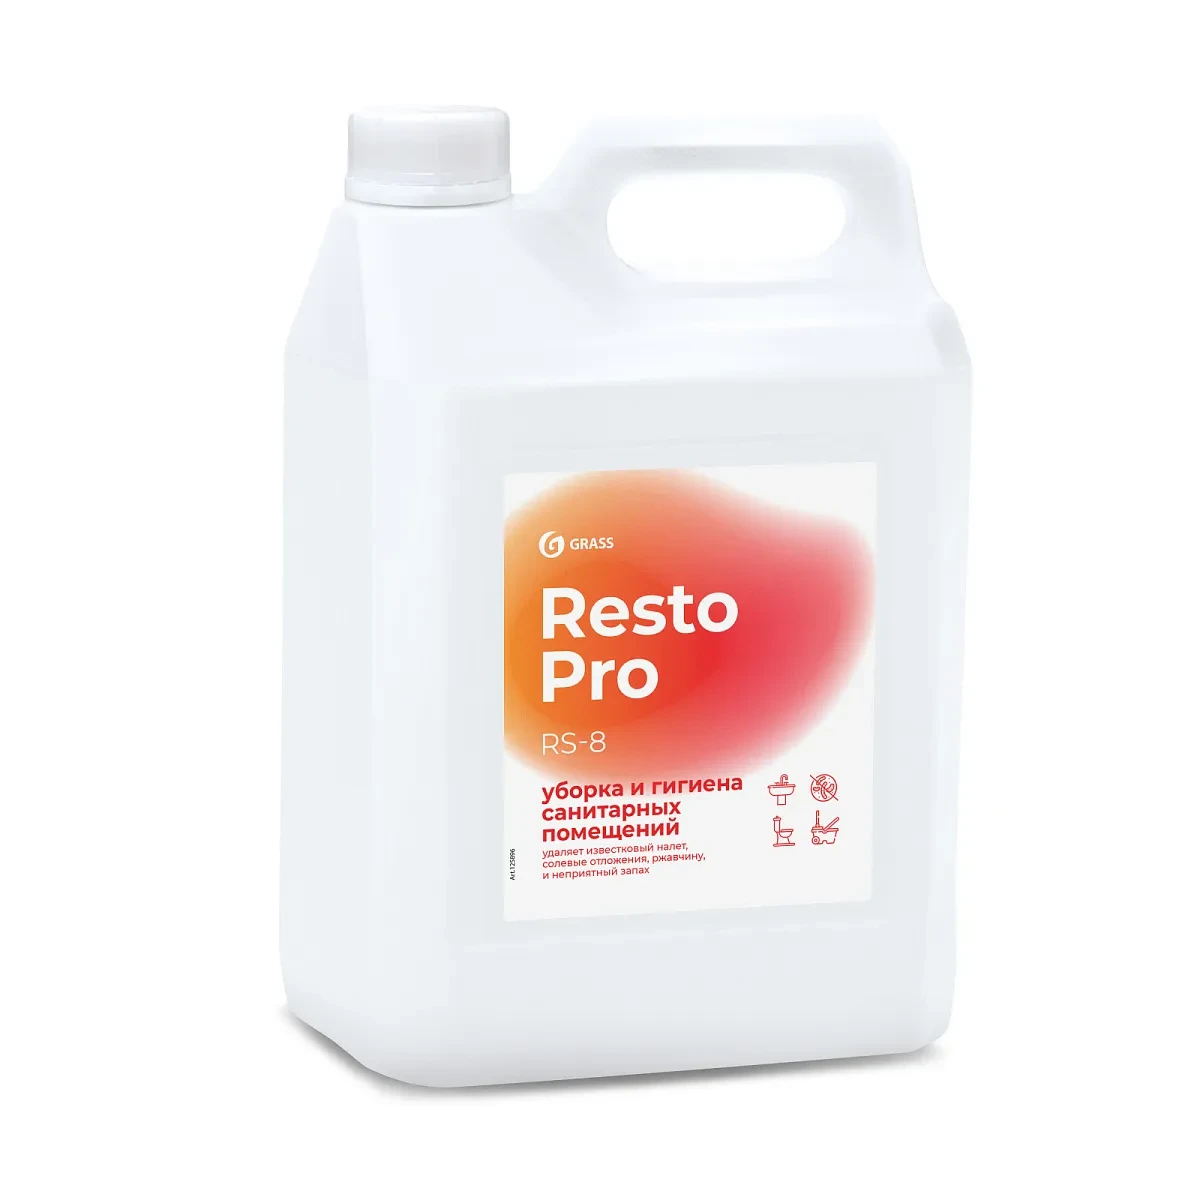 Средство для уборки и гигиены санитарных помещений Resto Pro RS-8 (5 литров)